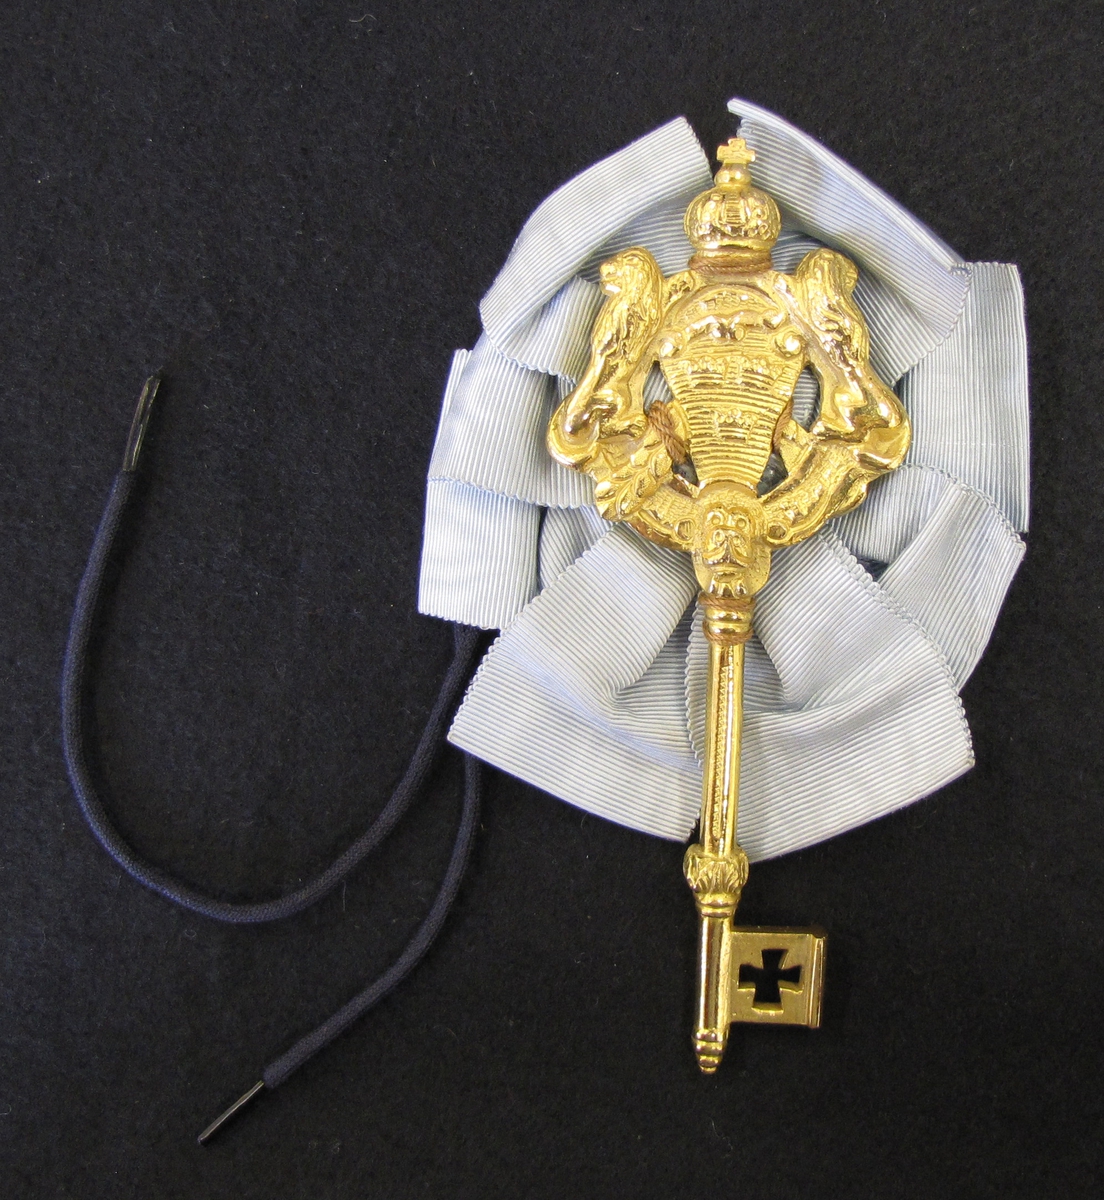 Nyckel tillhörande kammarherreuniformen. Nyckeln är förgylld med tre kronor flankerad med två lejon. Nyckeln är krönt och fästad på ett serafimerblått sidenband. 

Kammarherren har som uppgift att tjänstgöra i kungens omedelbara närhet. När kammarherren är i tjänst bär han en nyckel som ämbetstecken. Nyckeln fästes bak på uniformen vid ryggslutet. Nyckeln symboliserar att kammarherrarna historiskt har haft tillträde till den kungliga personens privata rum.

Erik T:son Uggla var protokollsekreterare vid Vattendomstolen i Vänersborg samt auditör (juridisk granskare av militärrättsskipning).
Erik var kurator vid Västgöta Nation i Lund. Genealog och heraldiker. Innehade en omfattande samling av exlibris vilken donerats till Riddarhuset. Samlingen hade påbörjats av Eriks far.

Erik var mycket intresserad av ordensväsende samt var redaktör för Ordenskalenders samt Ointroducerad Adels kalender. Han var hedersledarmot av Västra Sveriges Genealogiska förening. Kammarjunkare 1953, Kammarherre 1959.